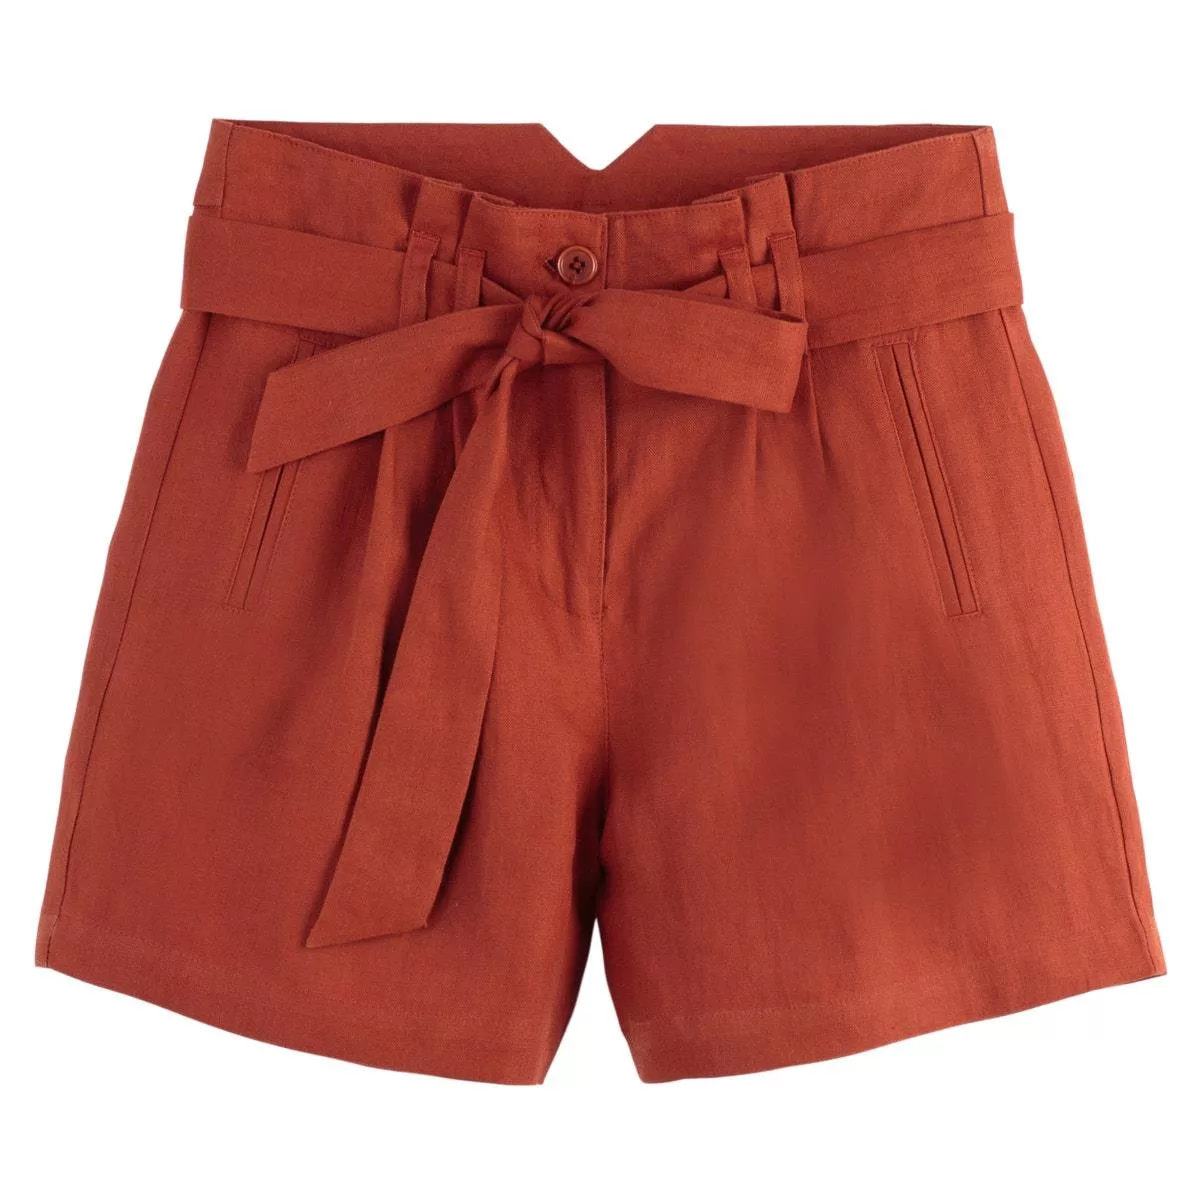 ordenar pavimento enlace Shorts: ¿Cómo llevar este tipo de pantalones cortos? – Moda – WebMediums